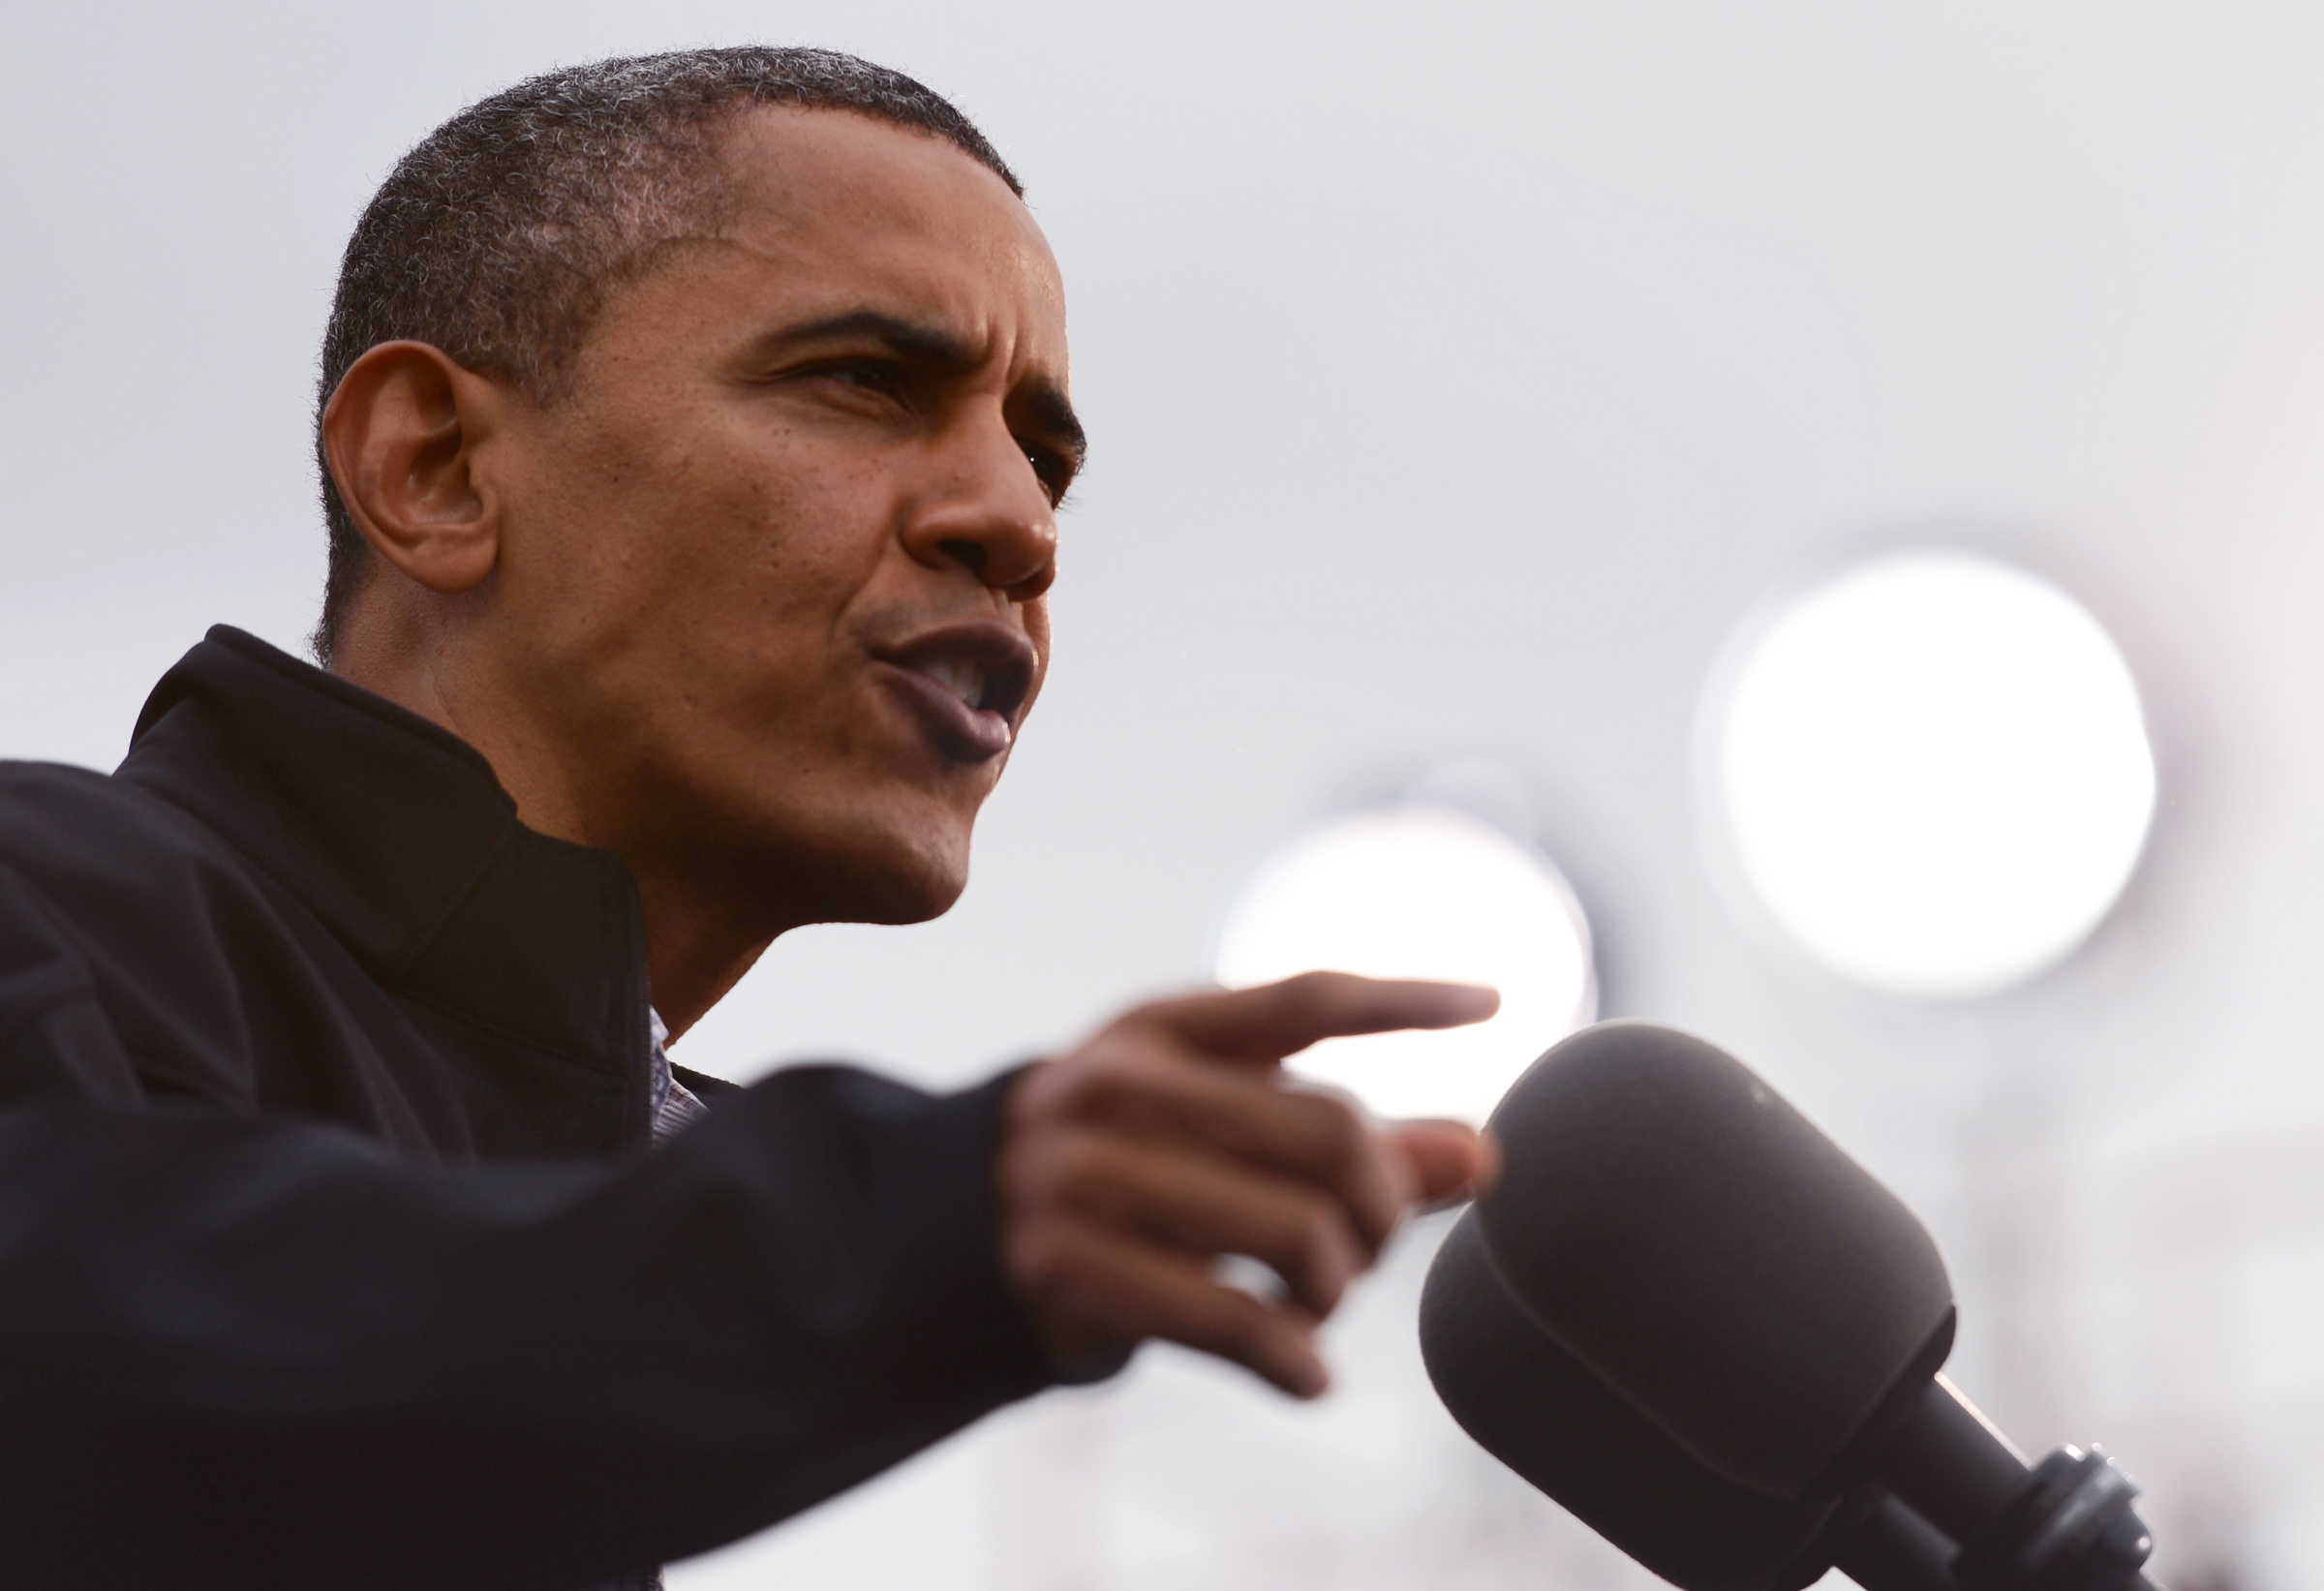 President Barack Obama speaks during a post-debate rally, Thursday at Sloan's Lake Park in Denver.